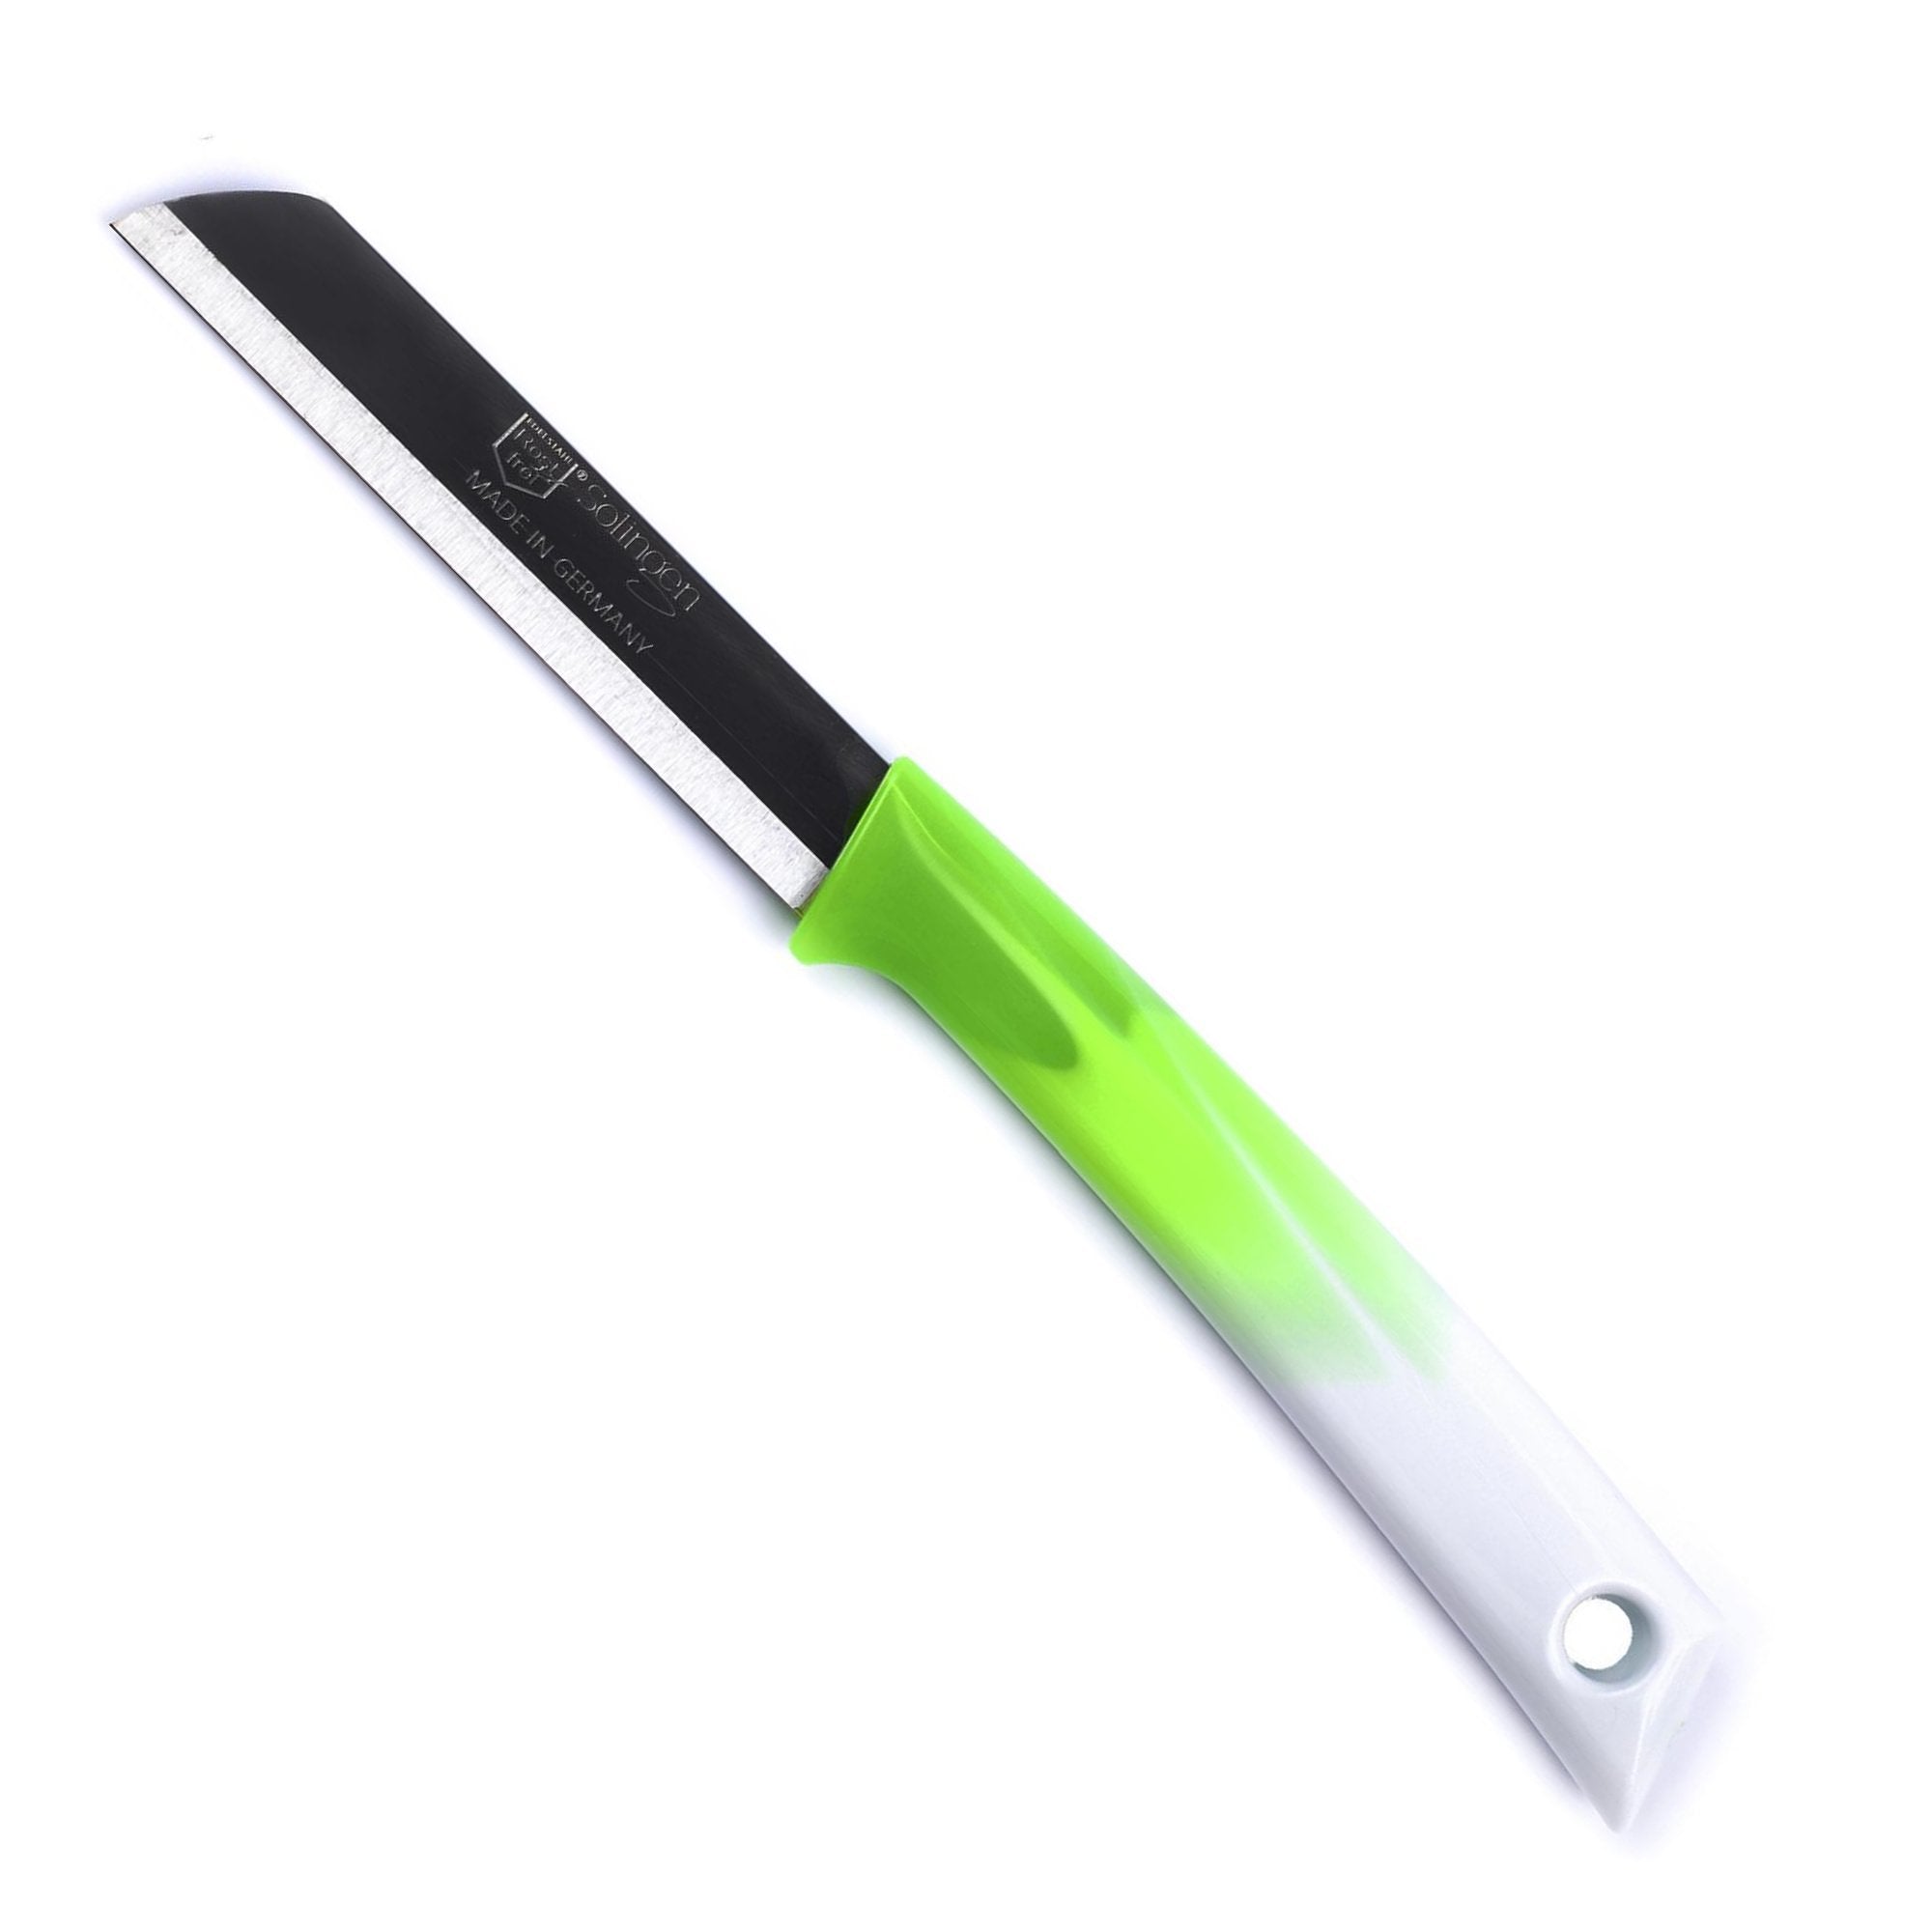 Solingen Schilmesje - RVS Glad - 19 cm met "Blade Cover" - Bi-Color Groen met Wit - 10 stuks